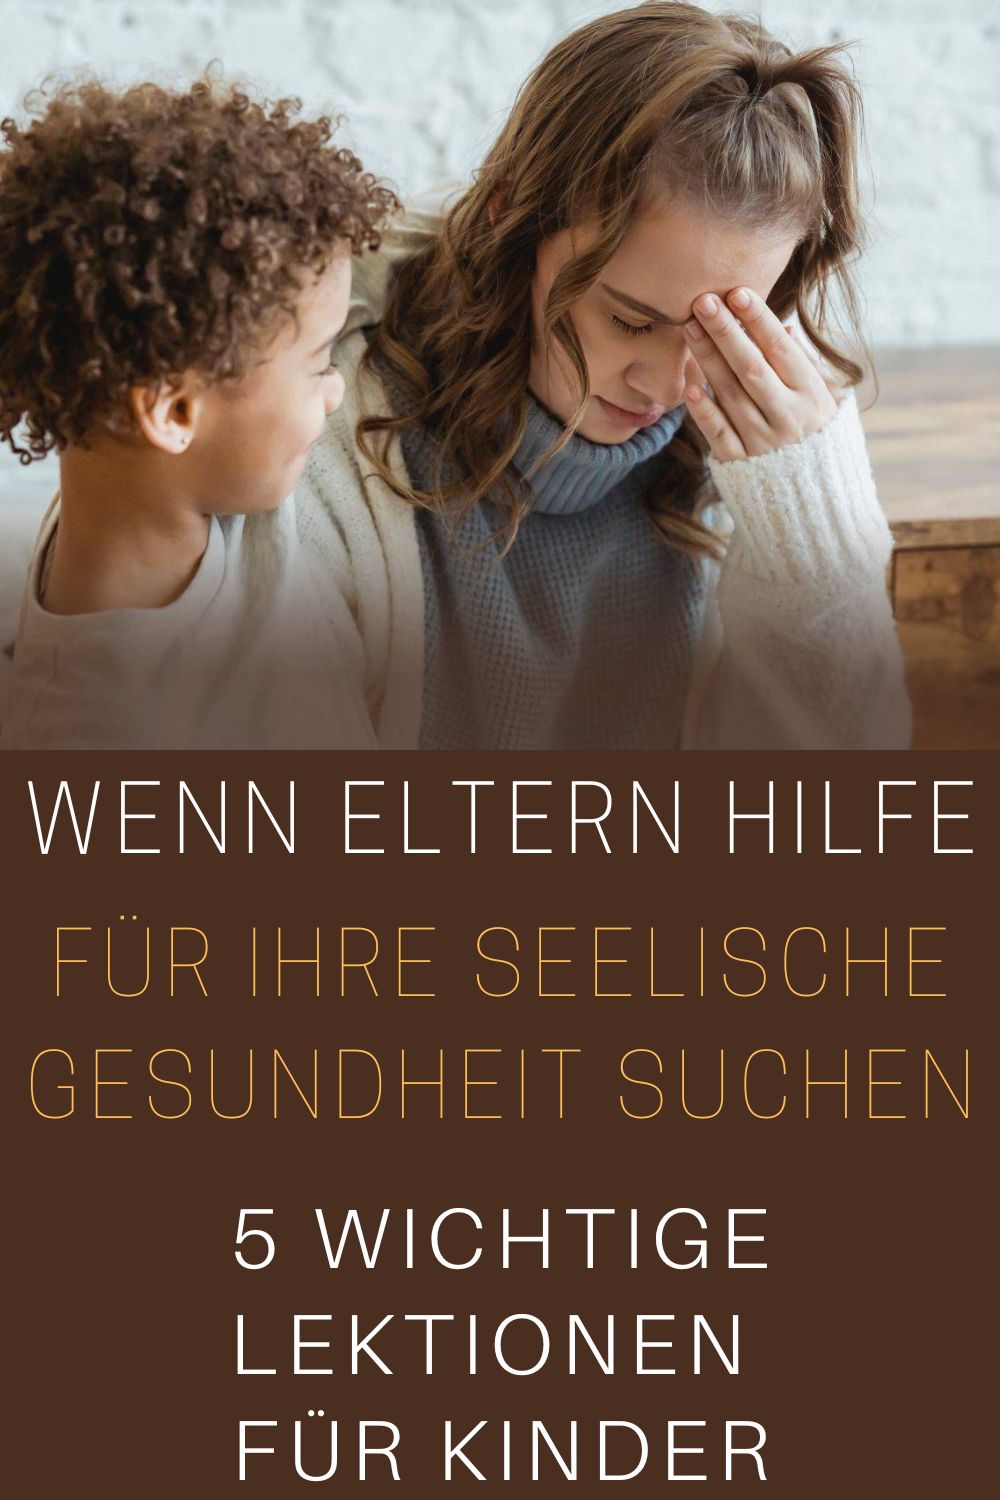 Wenn-Eltern-Hilfe-fuer-ihre-seelische-Gesundheit-suchen-5-wichtige-Lektionen-fuer-Kinder